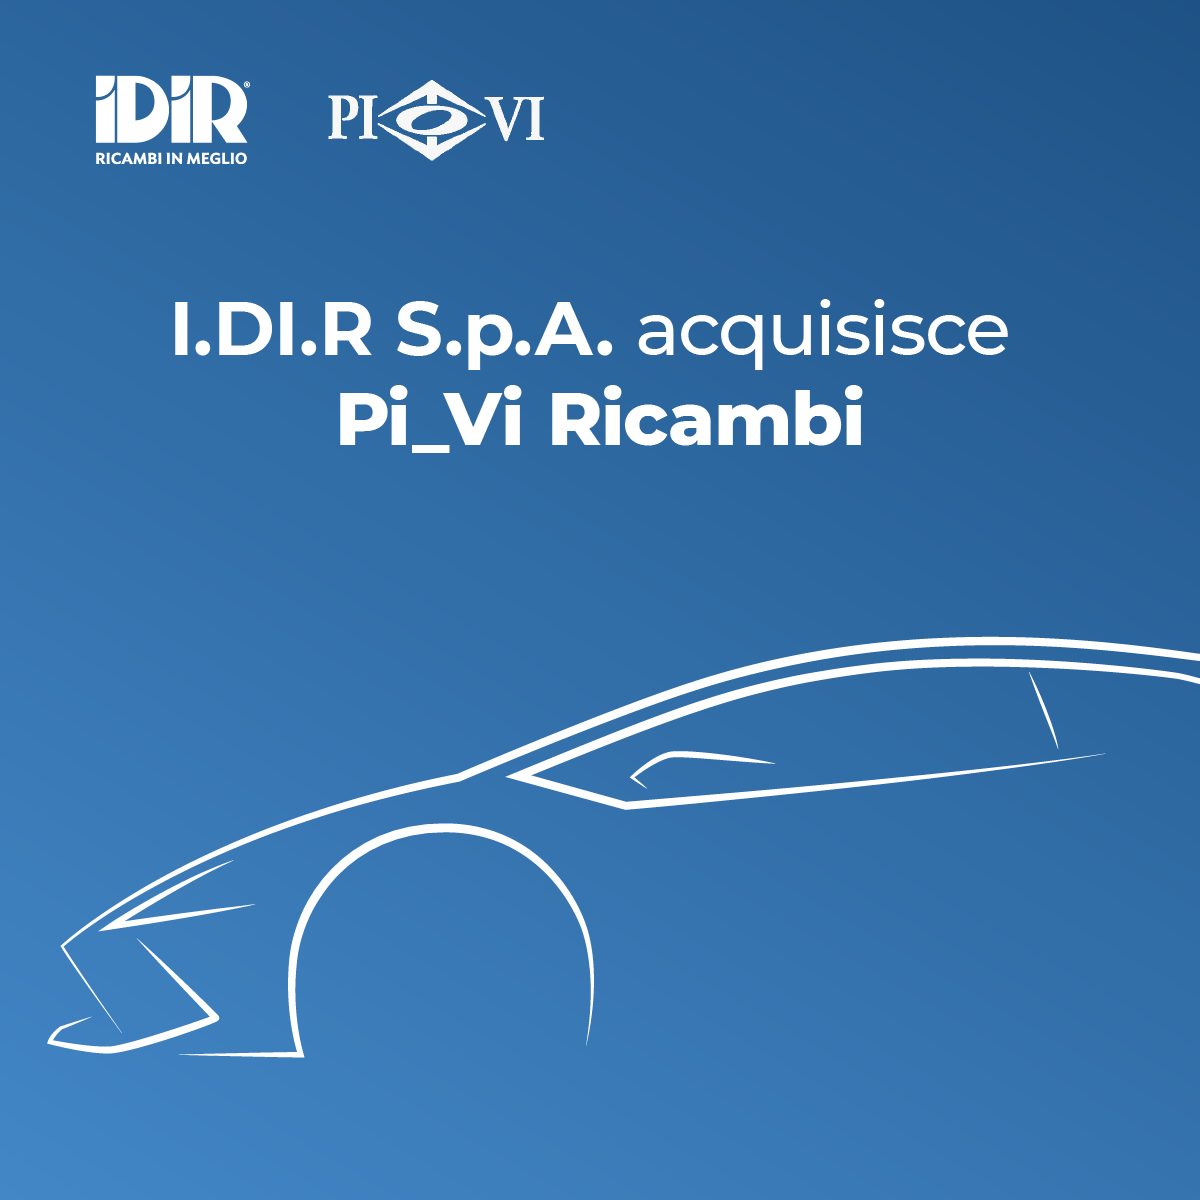 I.DI.R. acquisisce Pi-Vi Ricambi, assestamento nella distribuzione